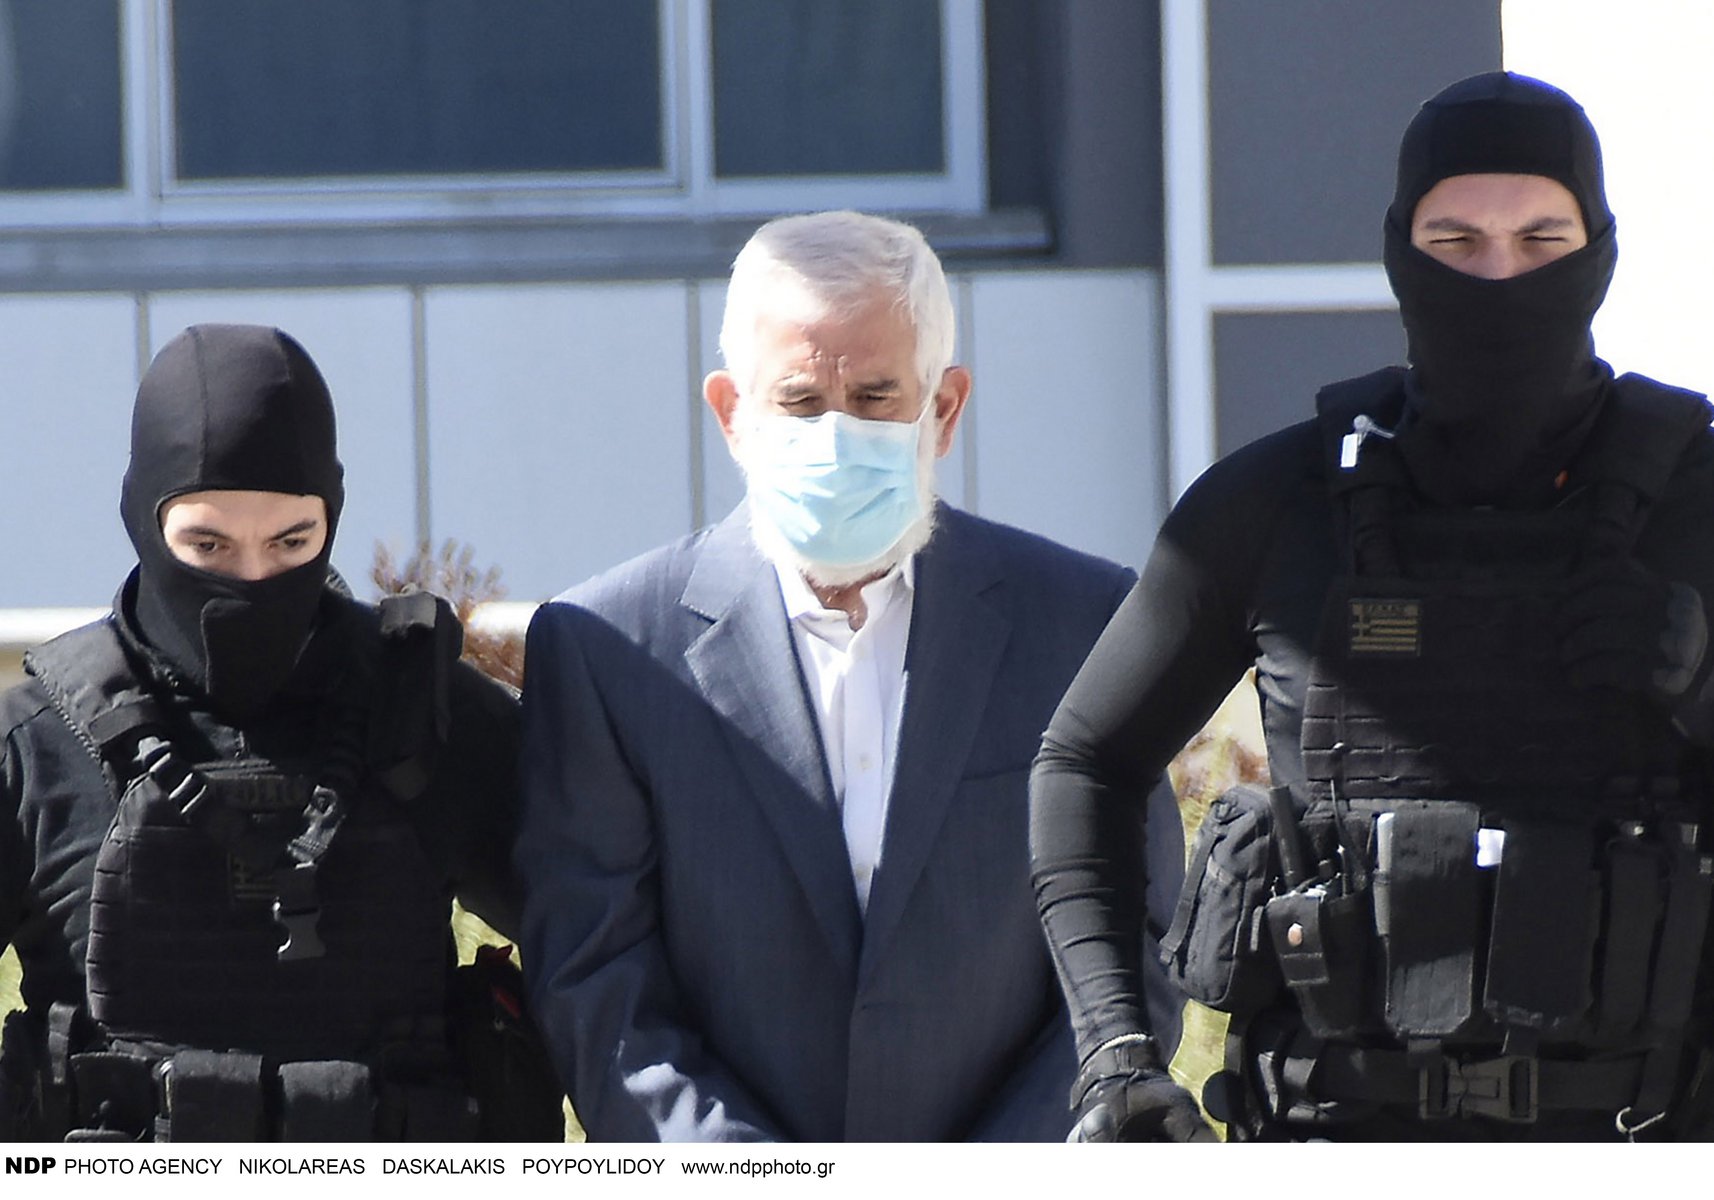 Πέτρος Φιλιππίδης: Νέα διακοπή στη δίκη μετά το «φίδι κολοβό» – Ο Μπιμπίλας πέταξε λαχεία στη δικηγόρο του ηθοποιού